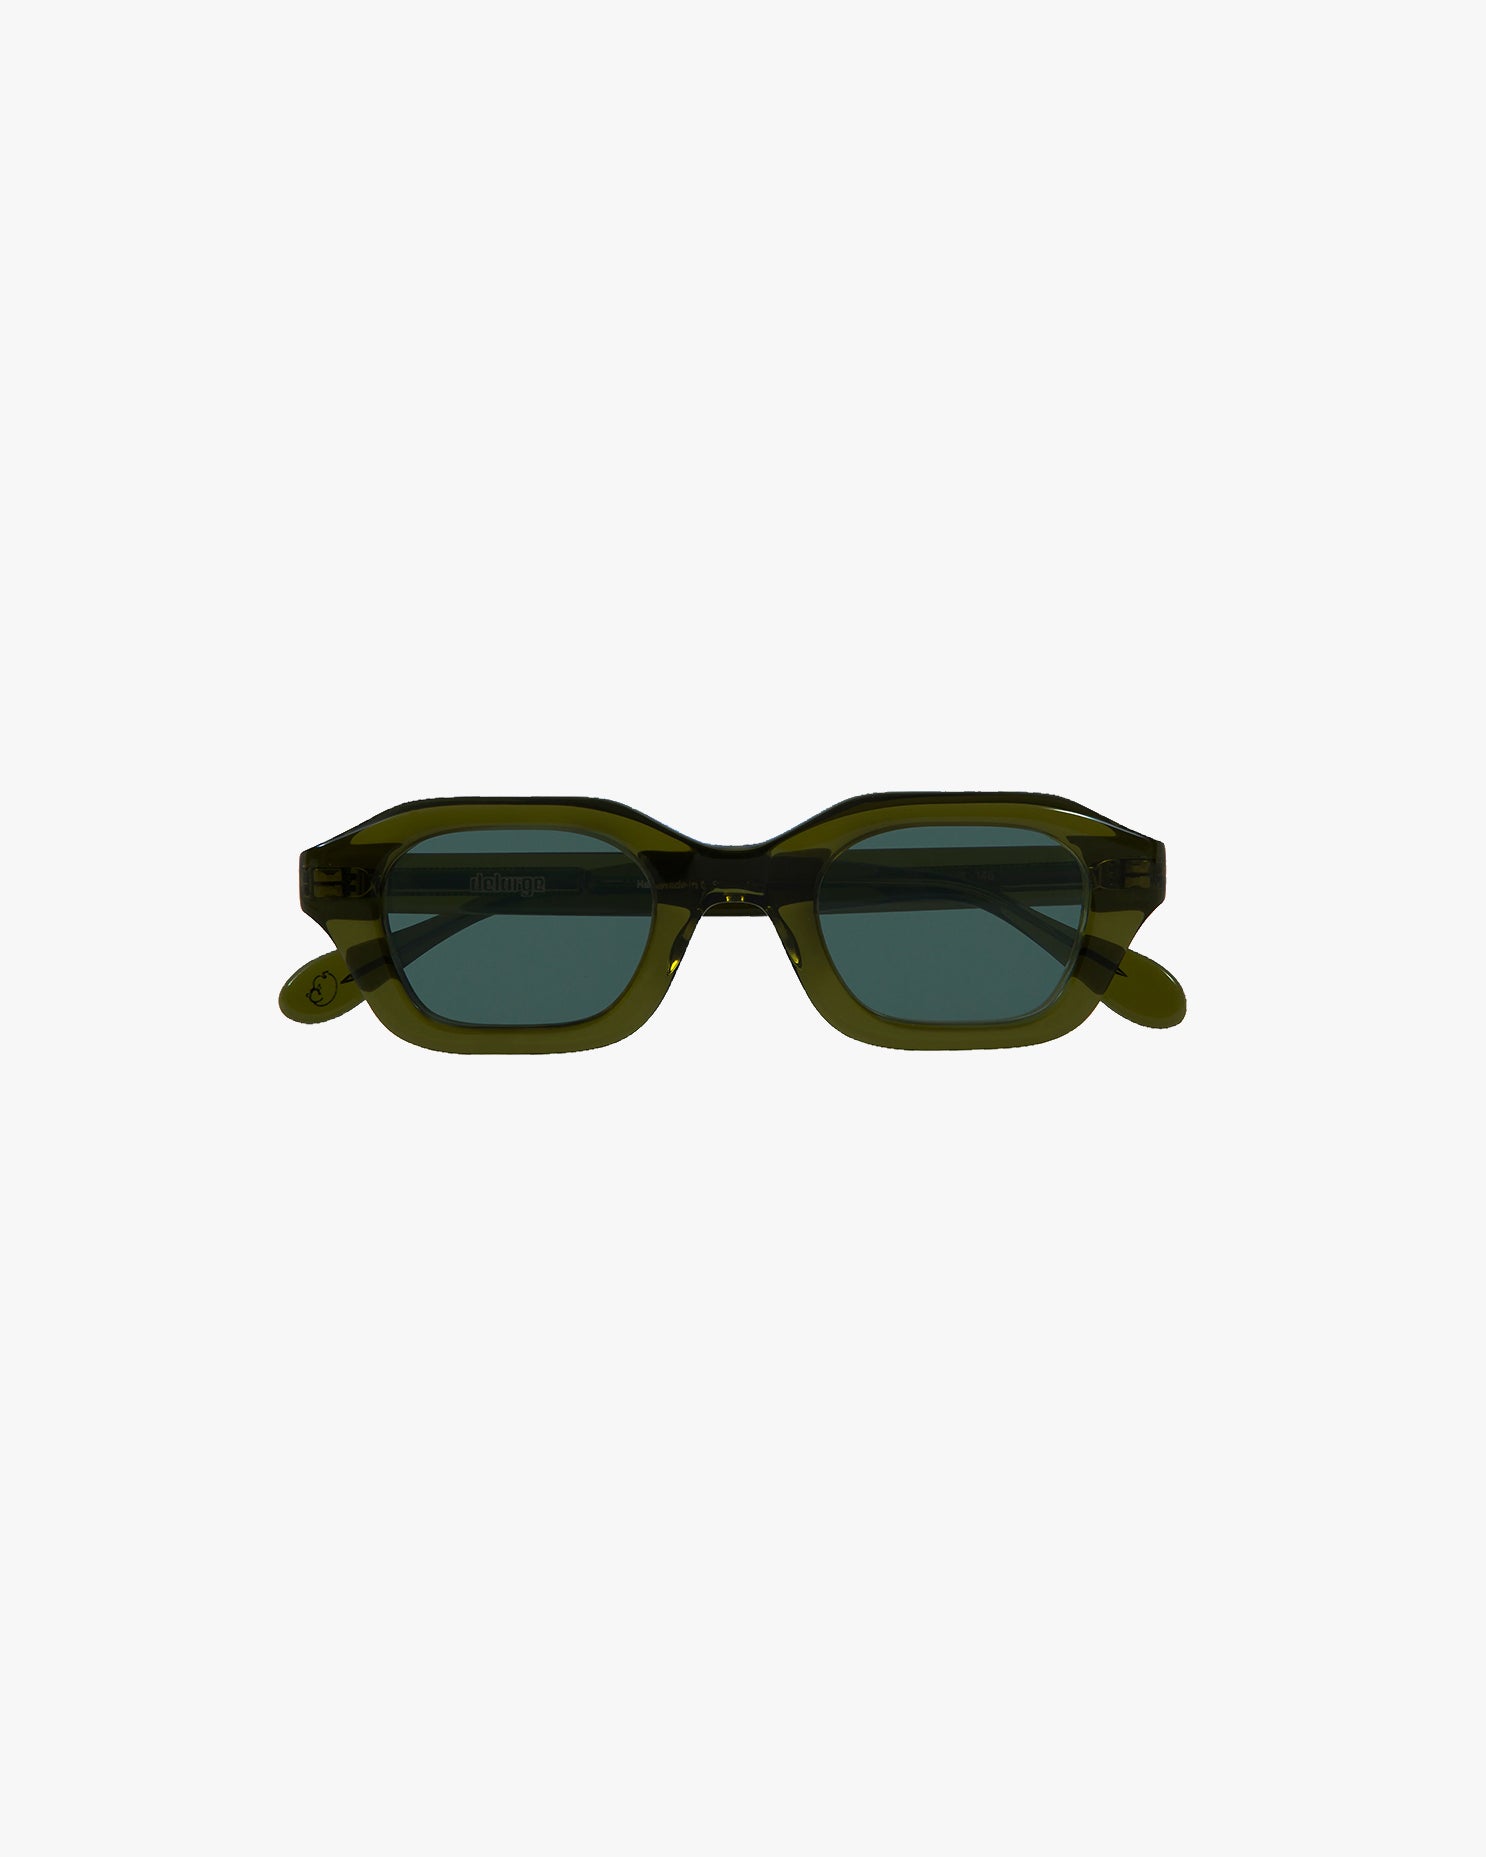 Streams Sunglasses in Green